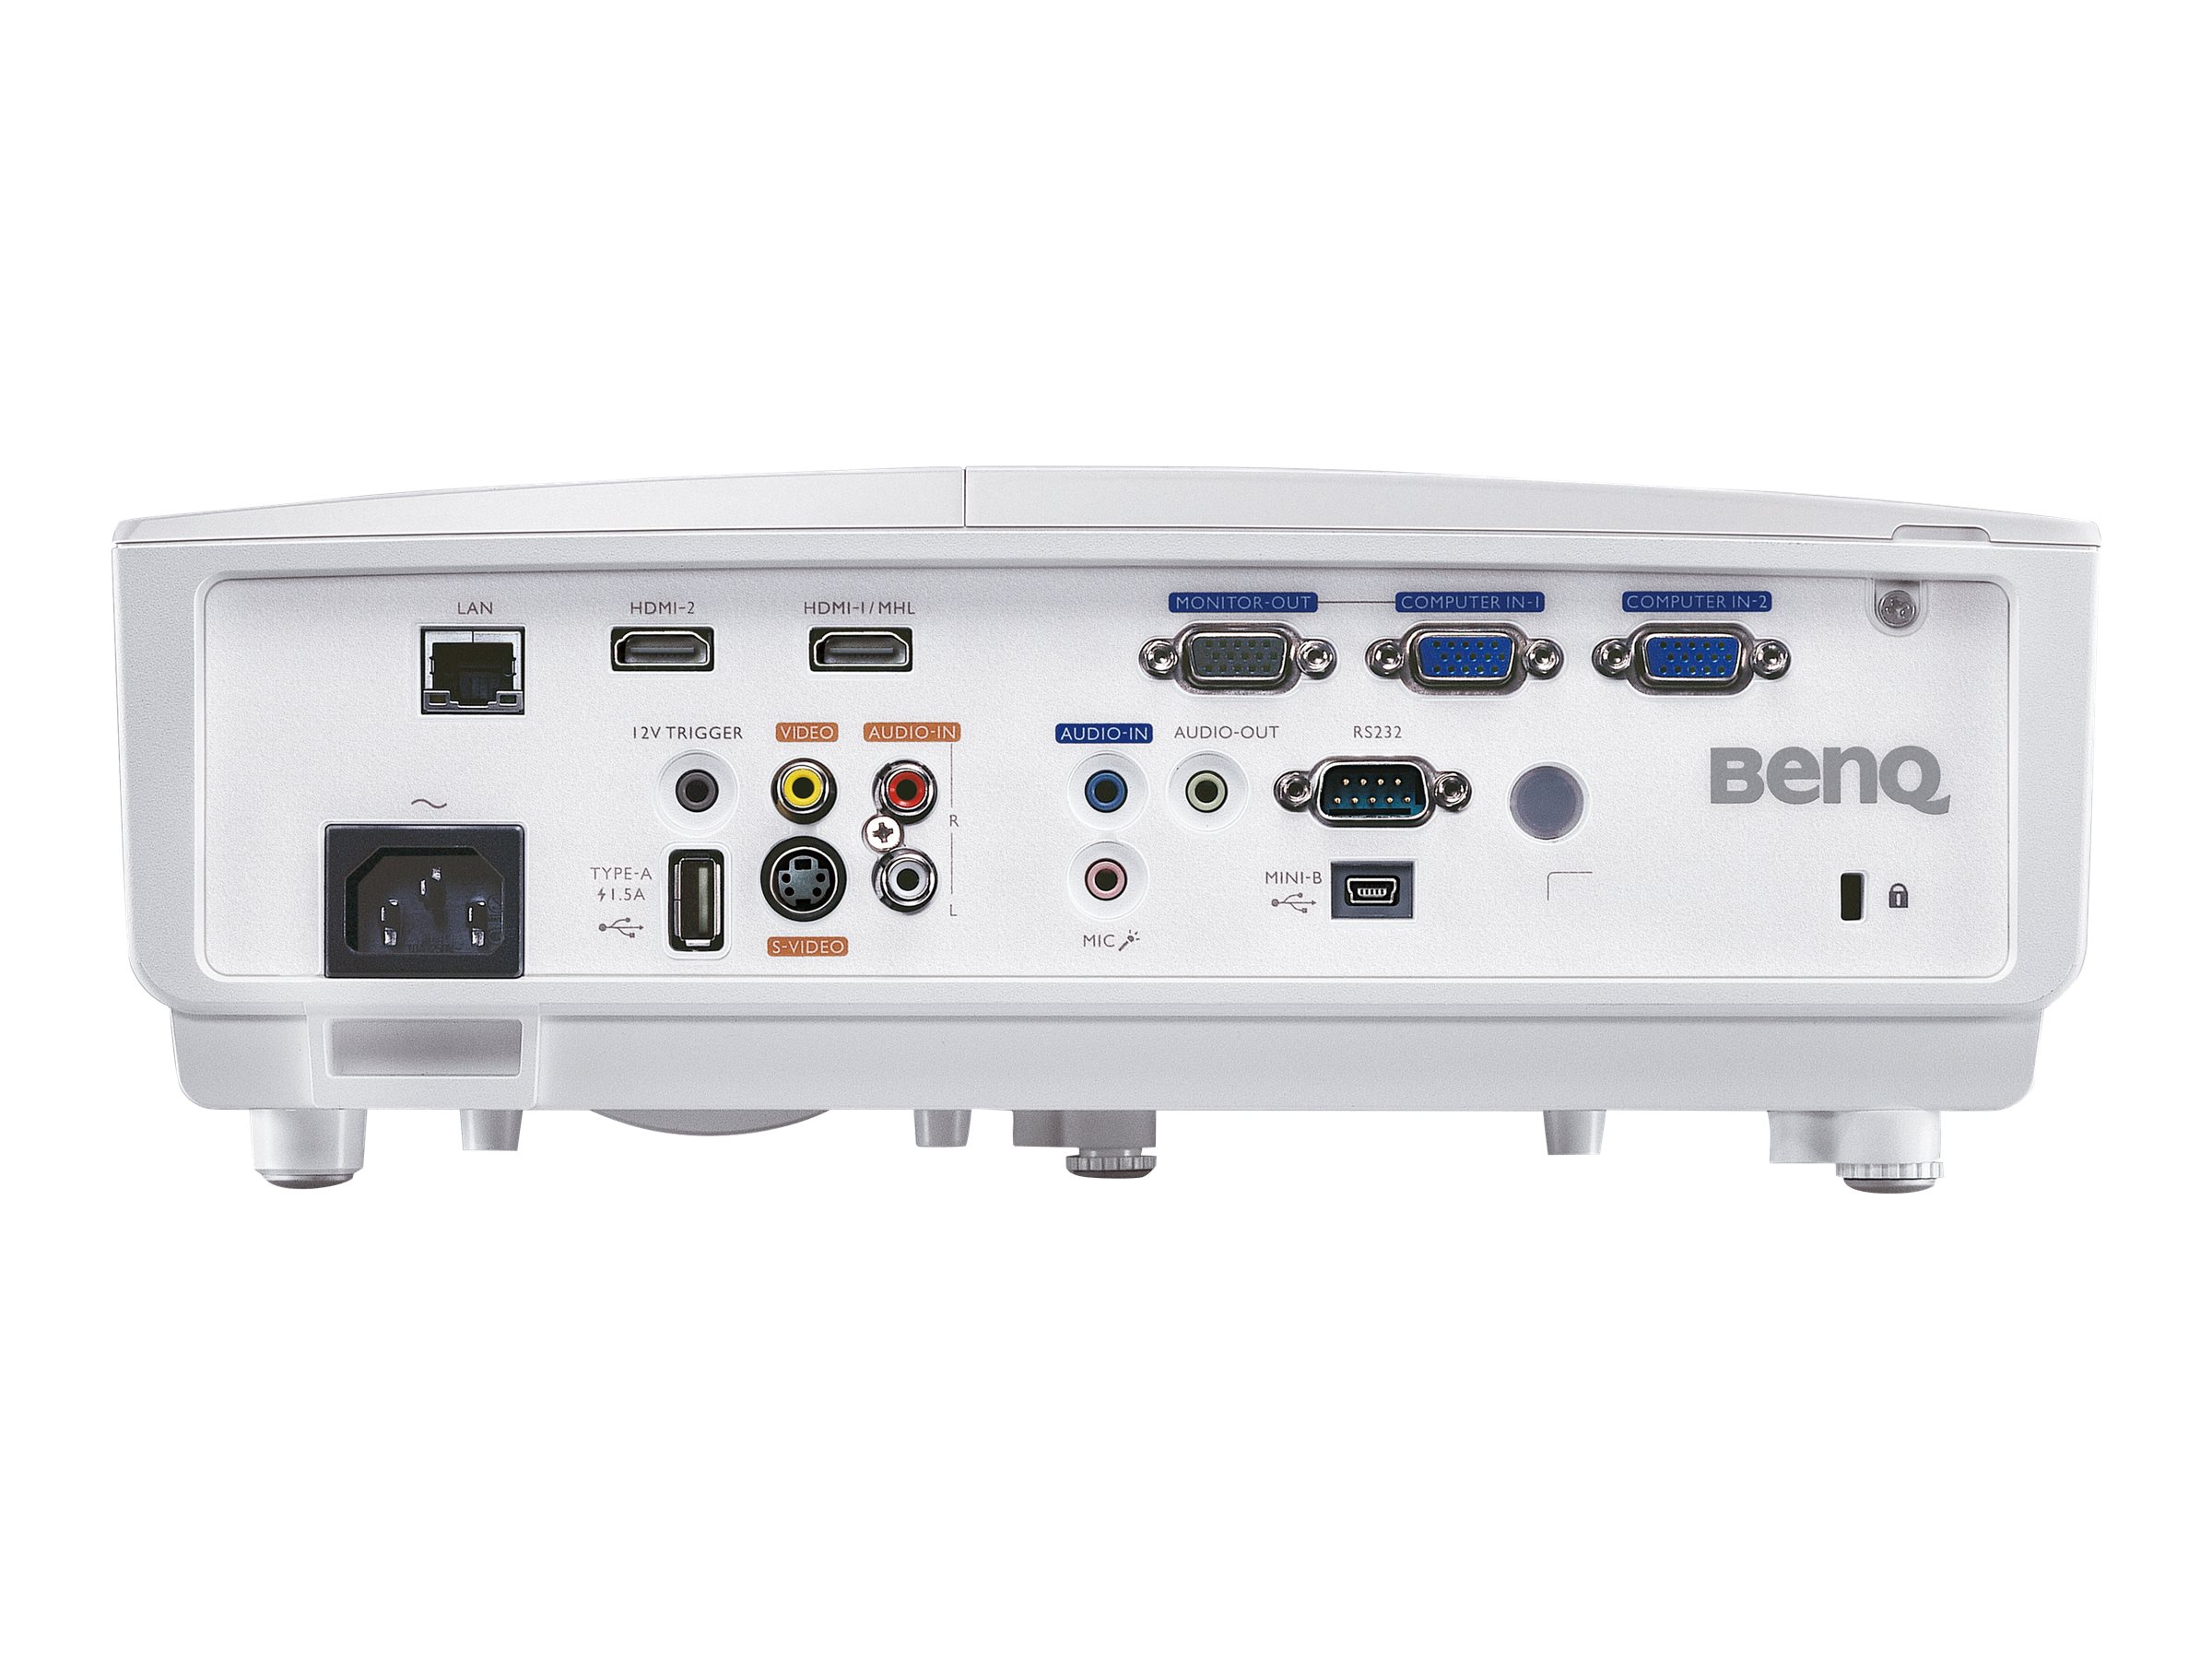 BenQ MX726 - Projecteur DLP - 3D - 4000 lumens - XGA (1024 x 768) - 4:3 - 9H.JCM77.23E - Projecteurs DLP